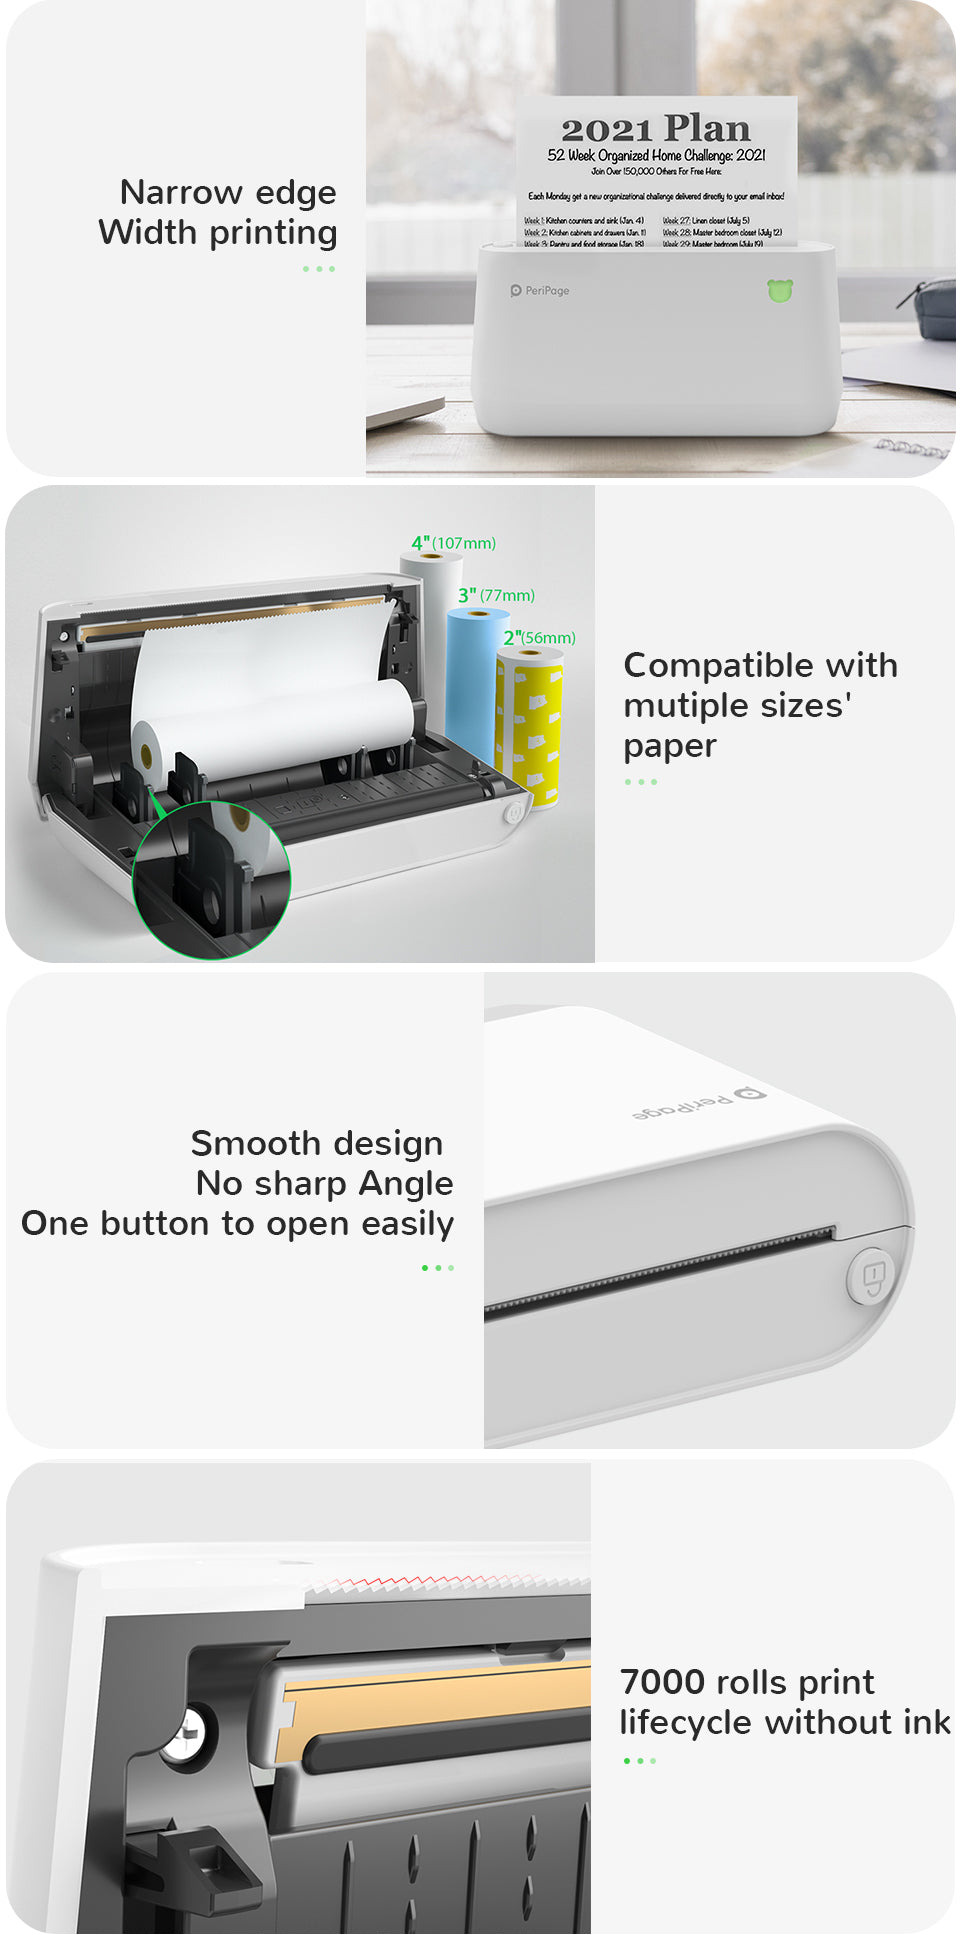 PeriPage A9 Max Mini Printer